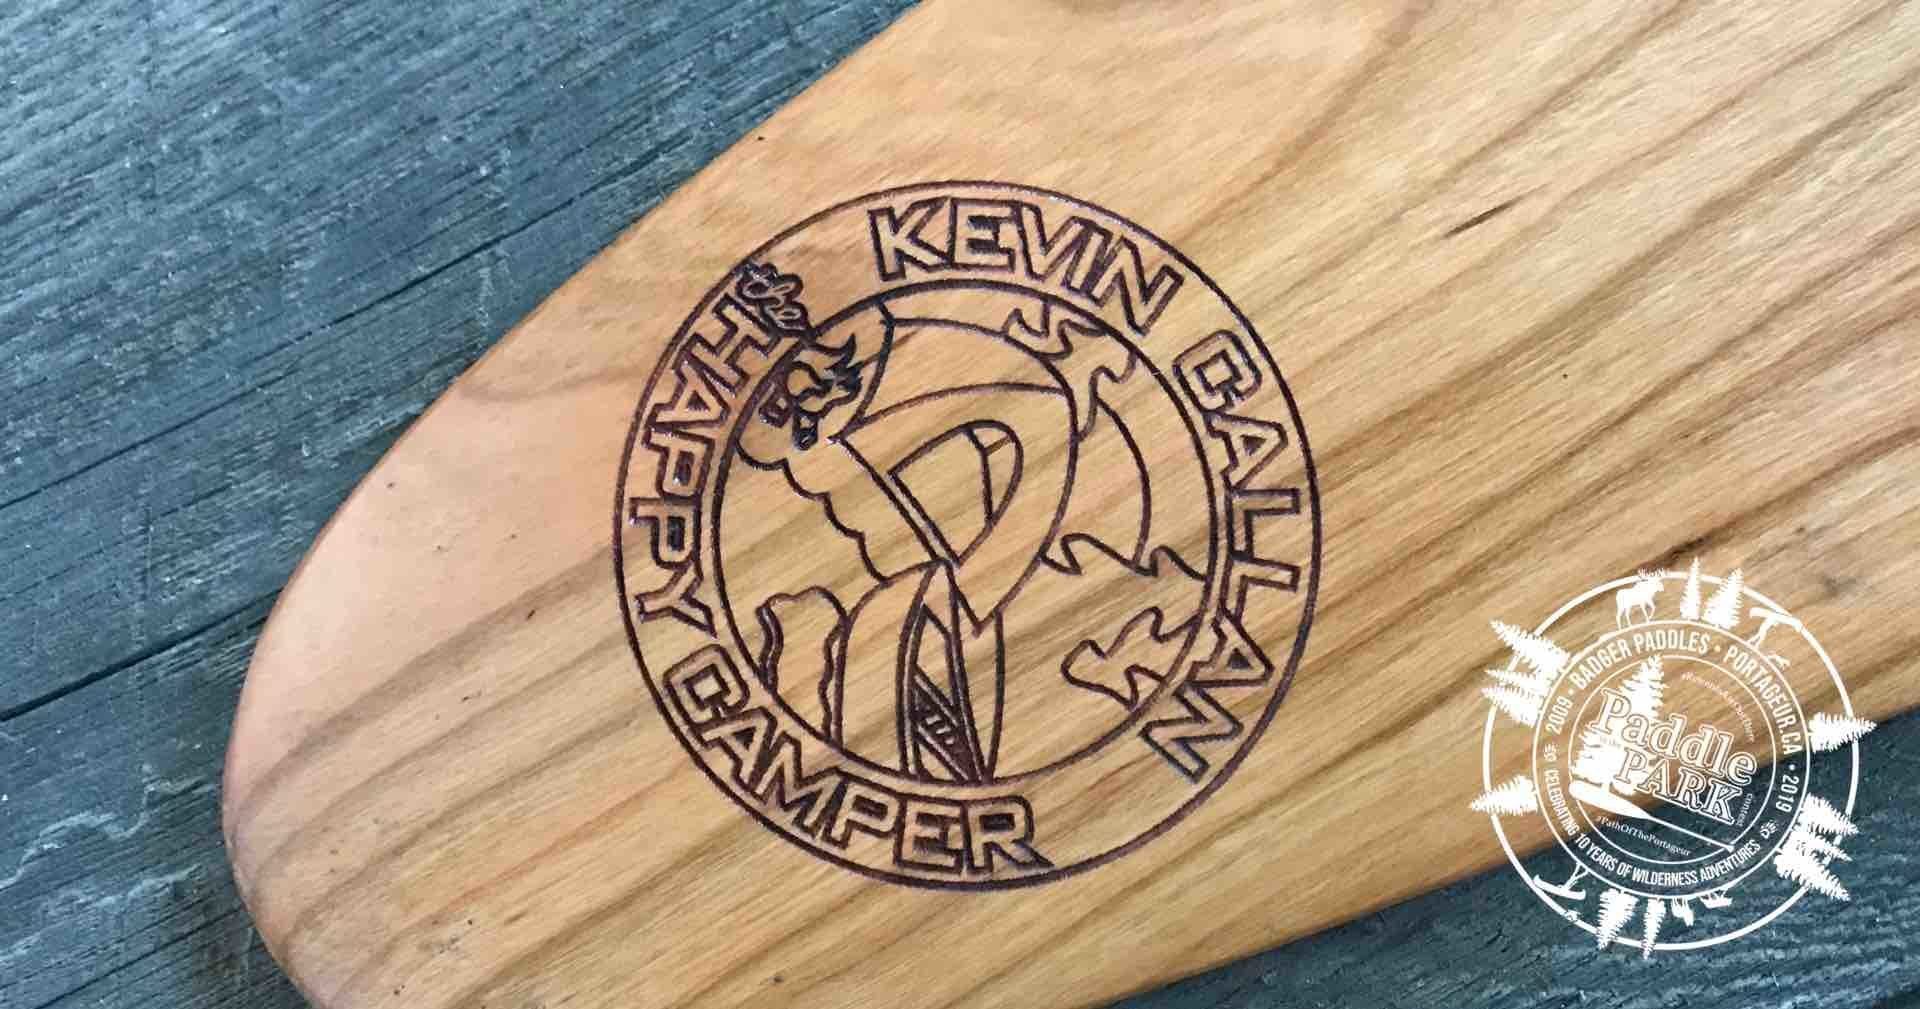 Laser engraved Happy Camper (Kevin Callan) paddle